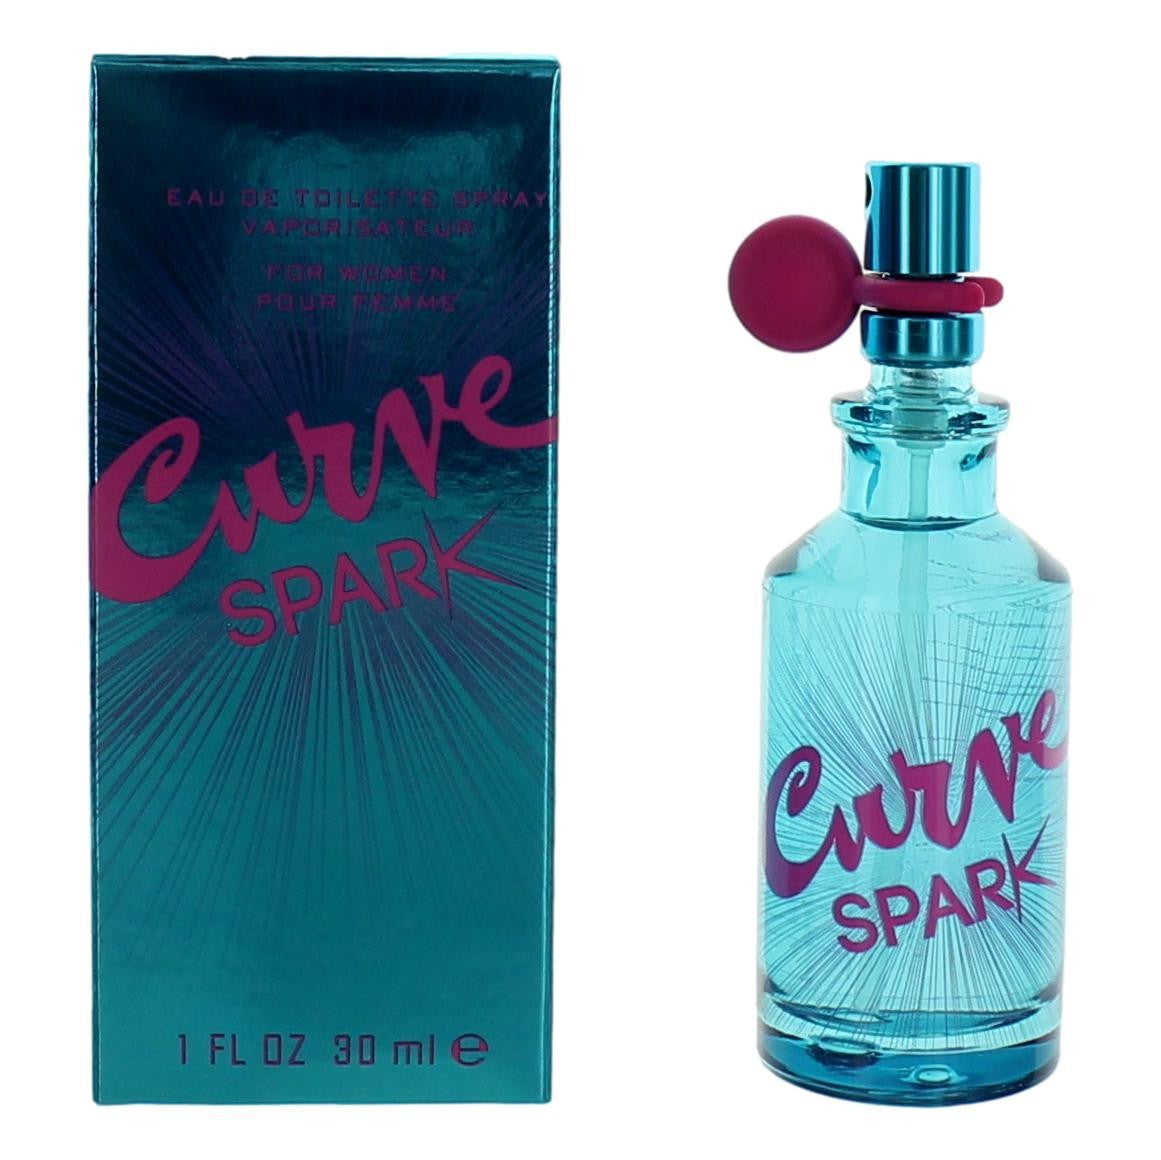 Curve Spark by Liz Claiborne, 1 oz Eau De Toilette Spray for Women